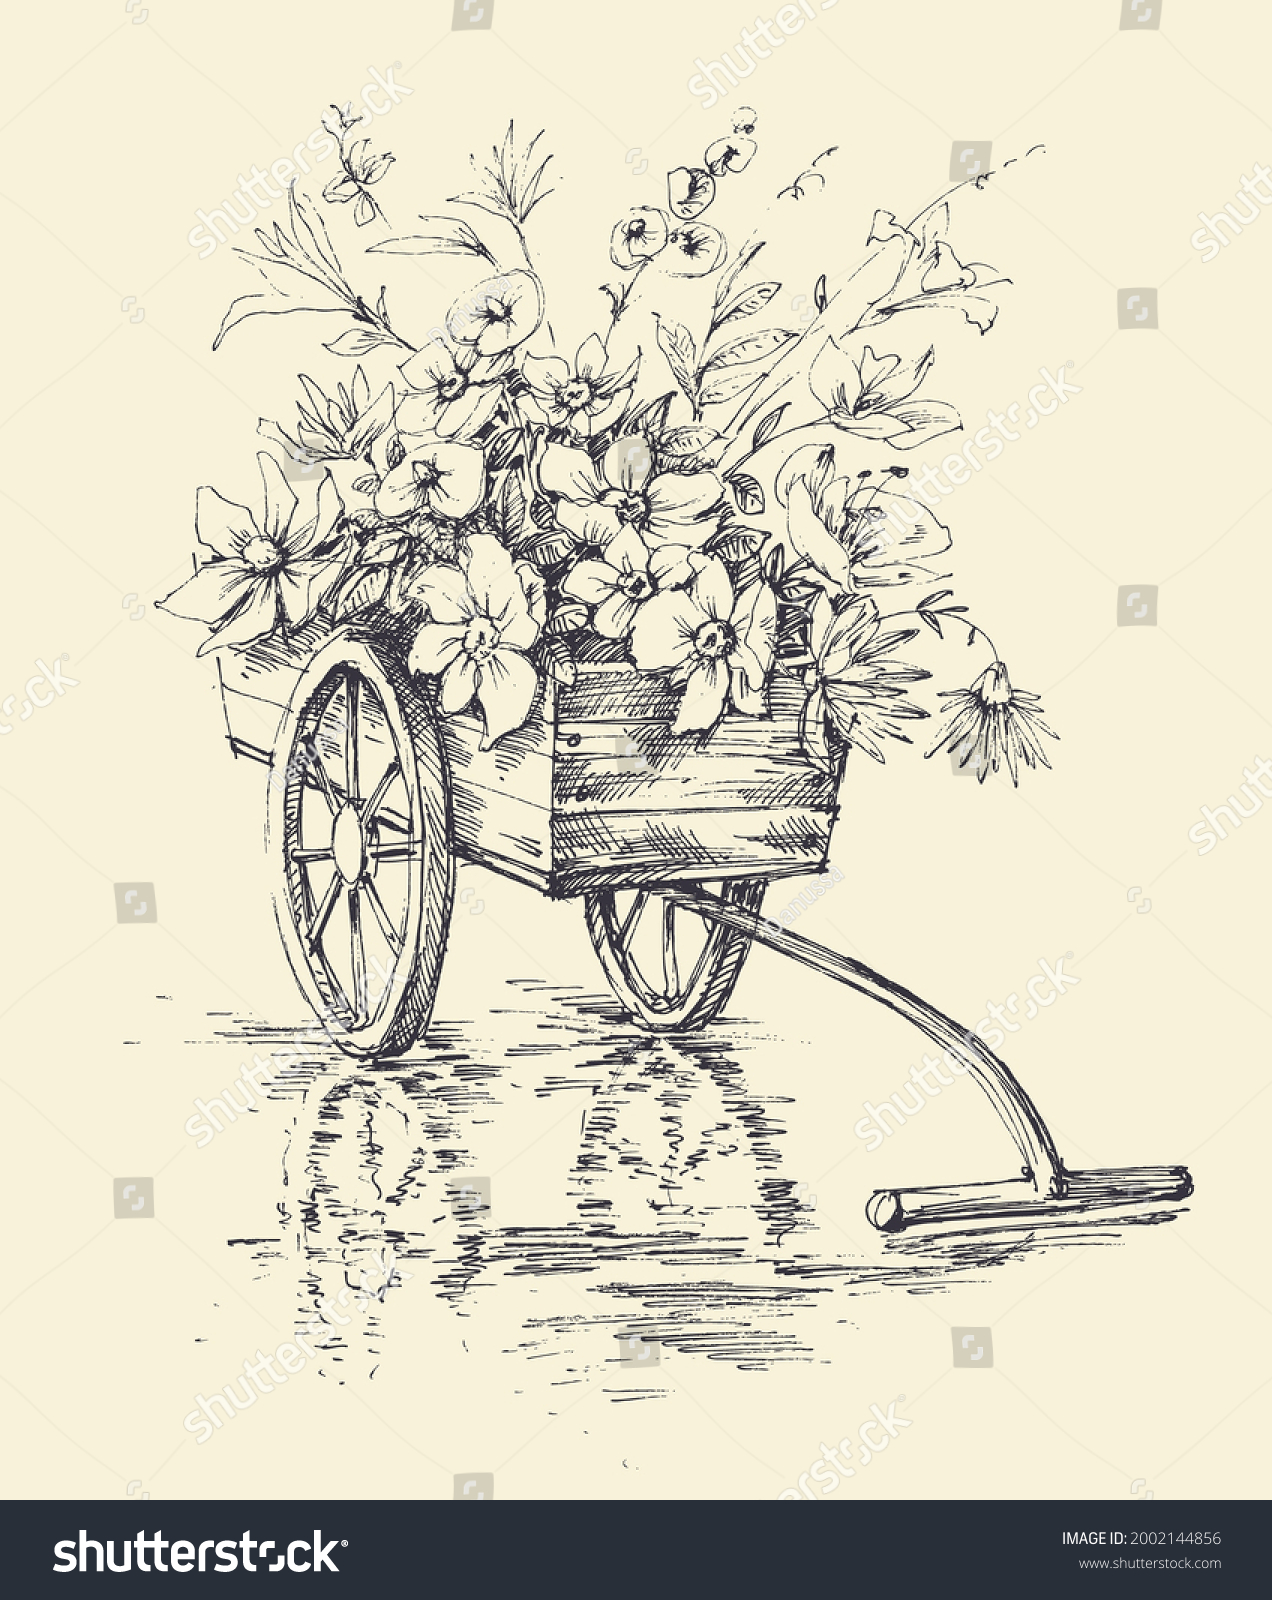 8,022 Flower cart Stock Vectors, Images & Vector Art | Shutterstock